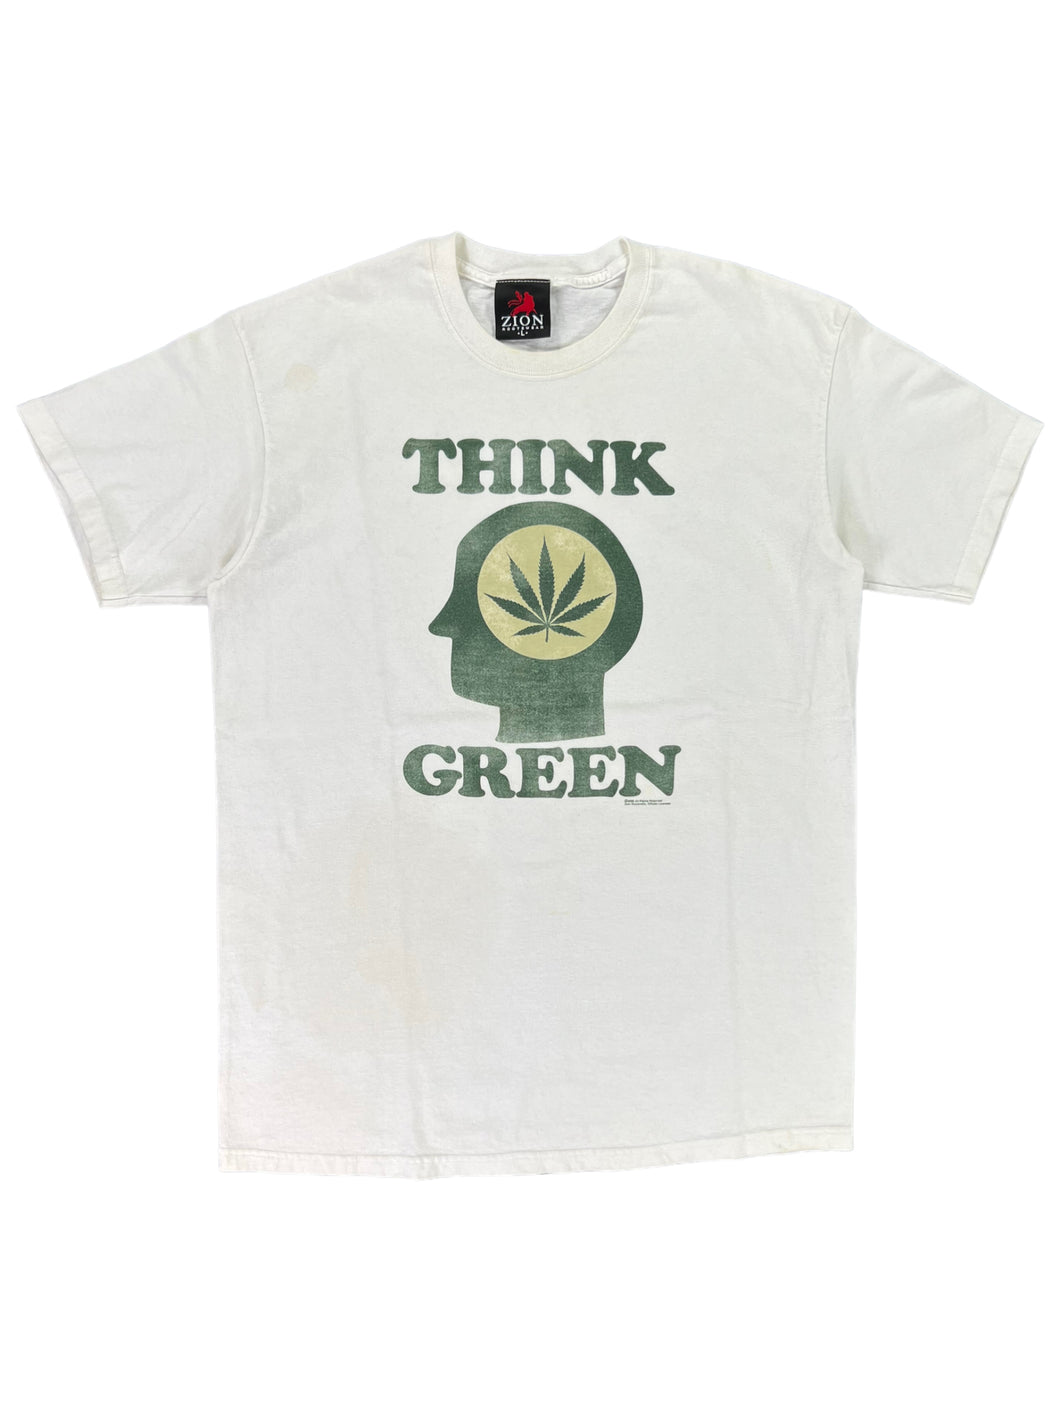 2005 Zion roots wear think green marijuana pot leaf brain tee (L)